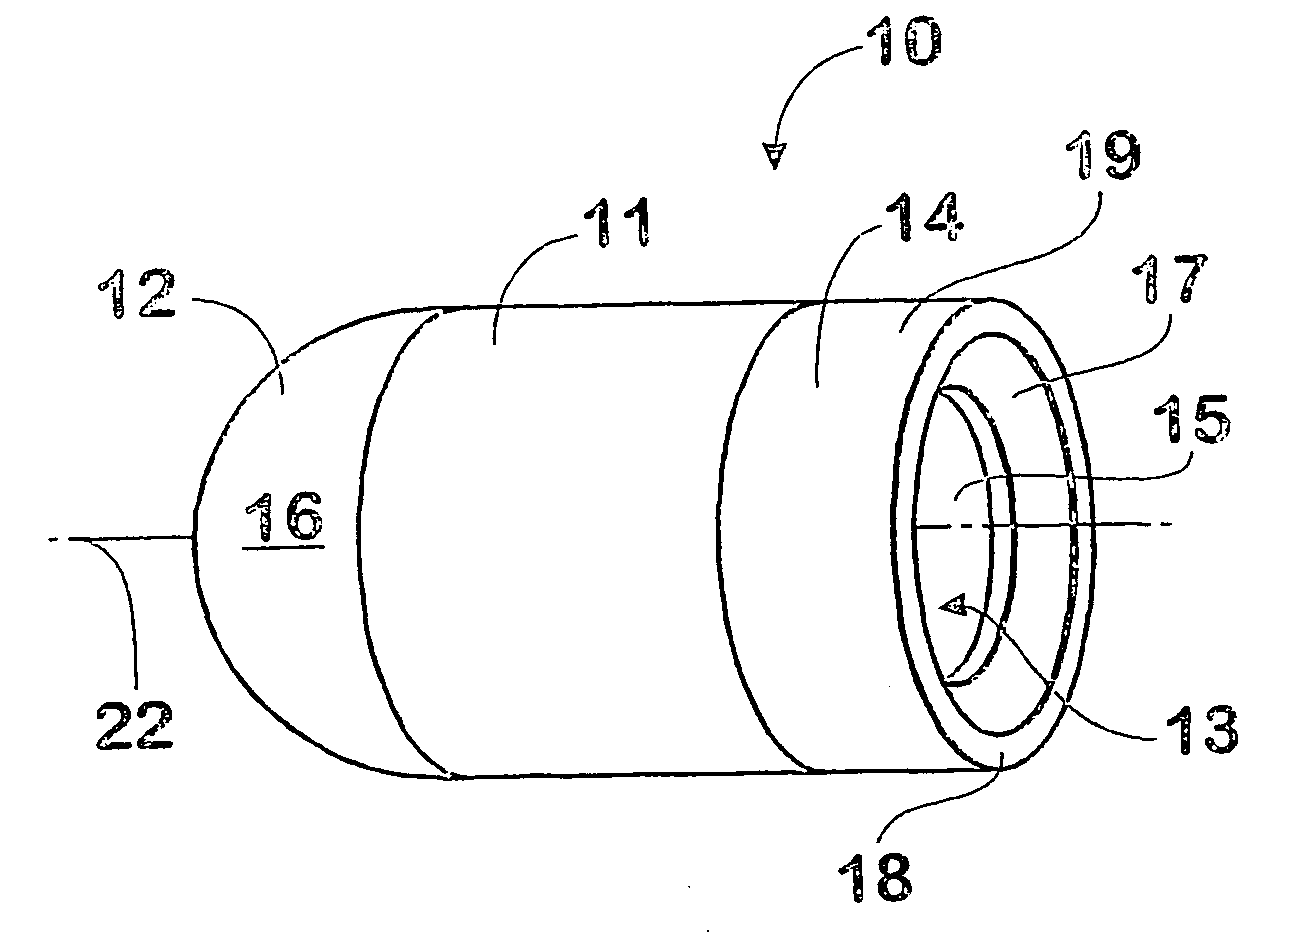 Projectile sealing arrangement